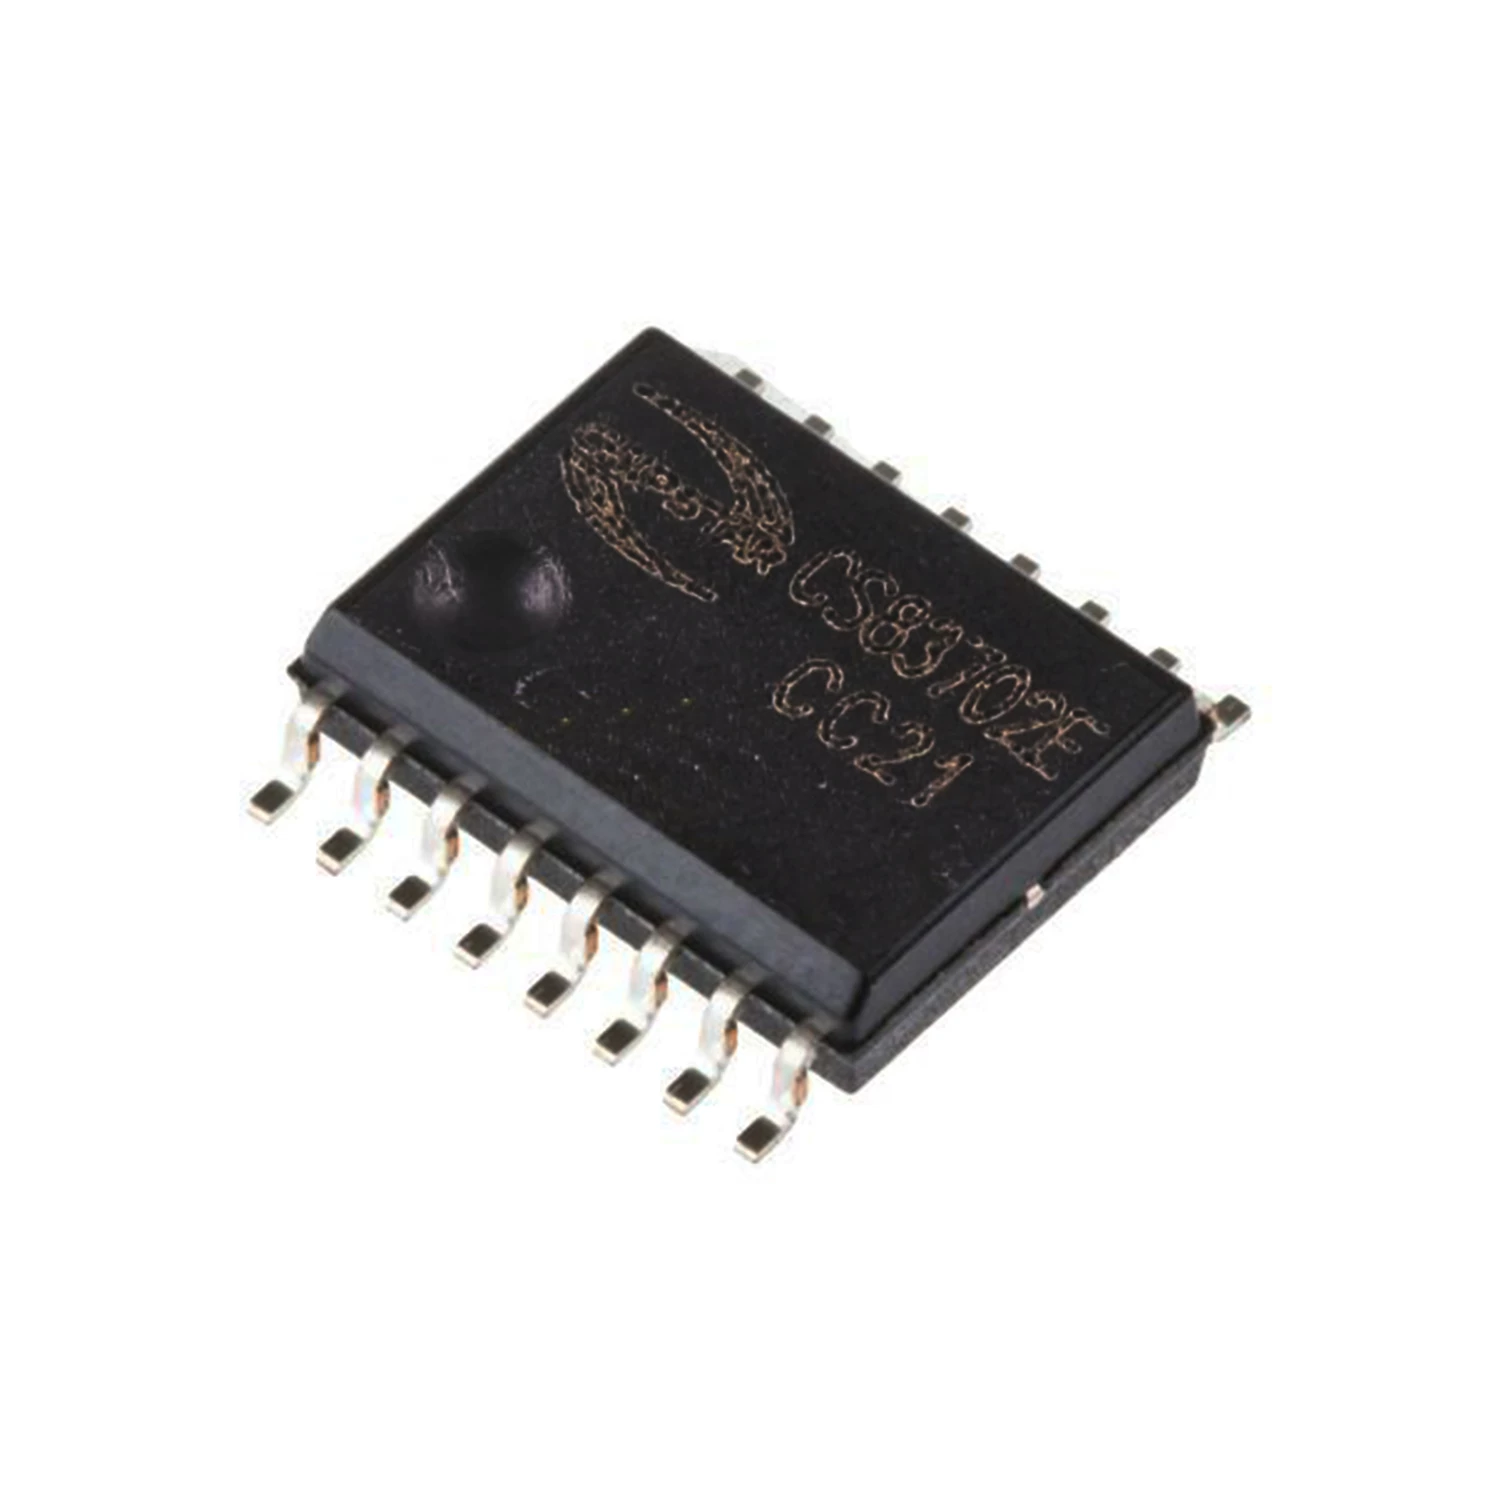 تصویر آی سی آمپلی فایر قدرت صوتی SMD CS83702E مناسب برای تغذیه باتری لیتیومی تک سلولی 